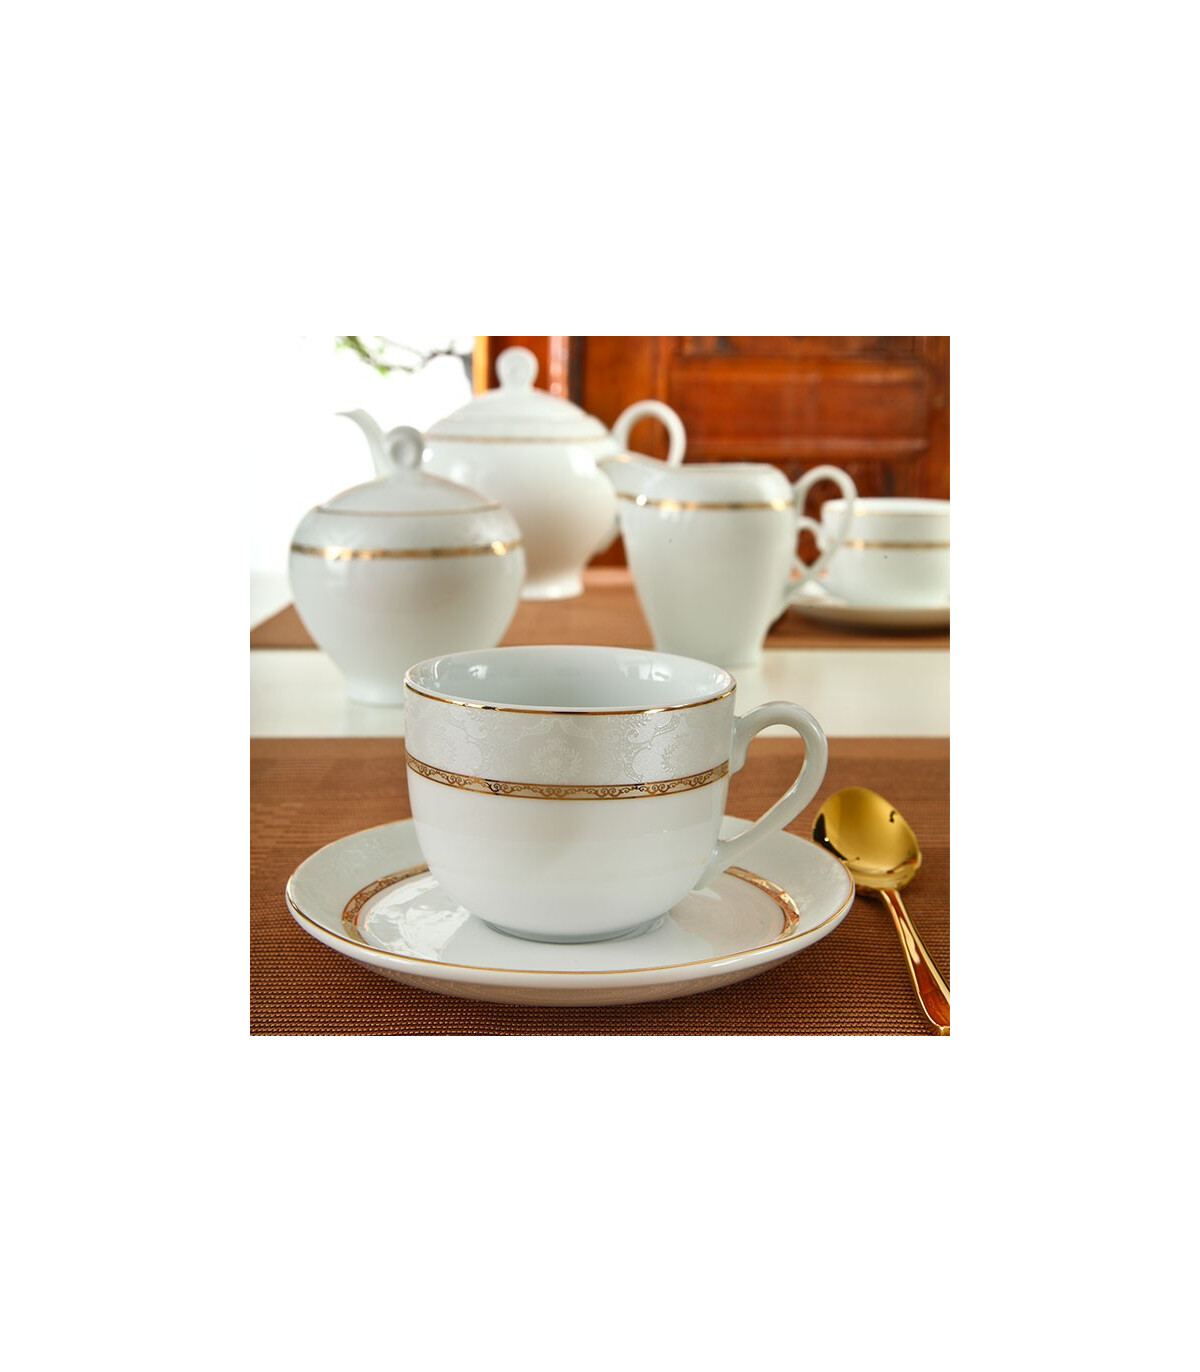 سرویس چینی 17 پارچه چای خوری هدیه طلایی